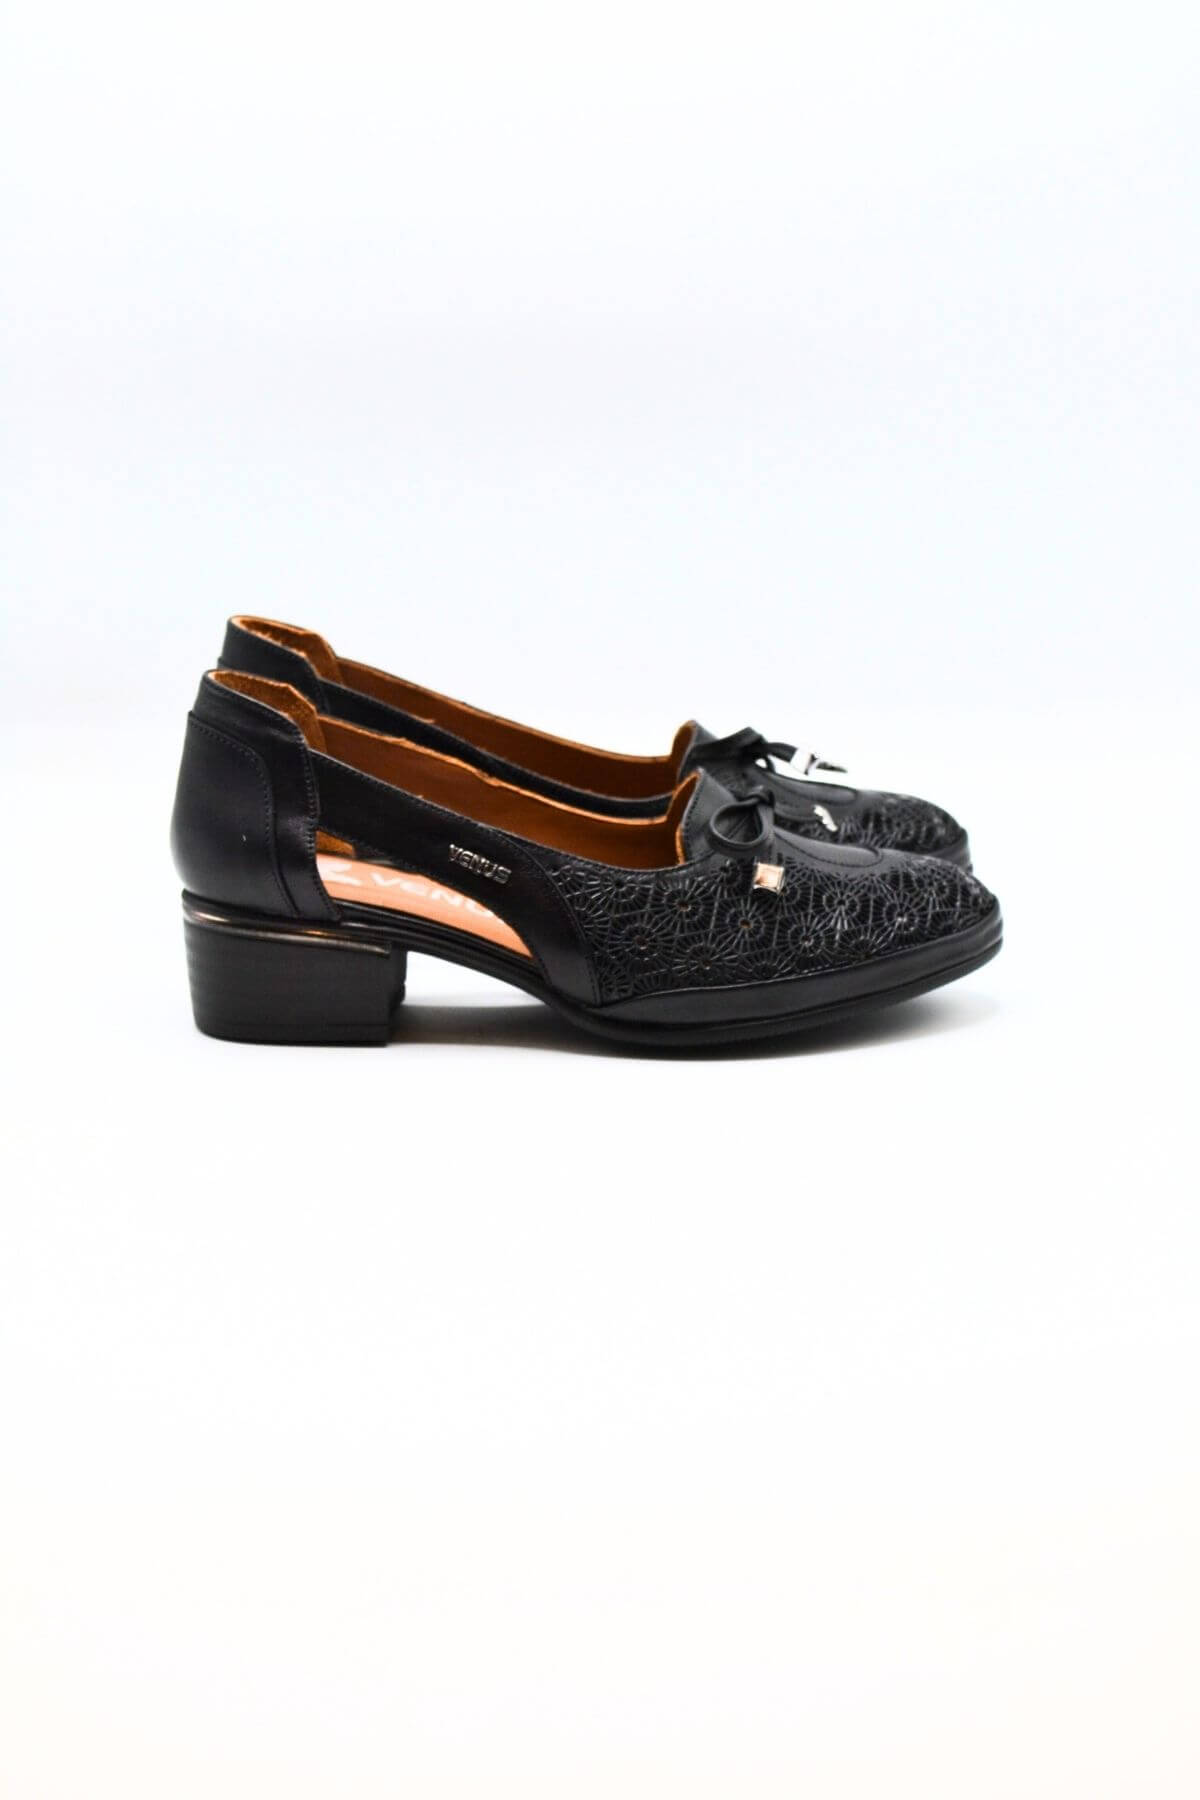 Kadın Topuklu Deri Ayakkabı Siyah 2312522Y